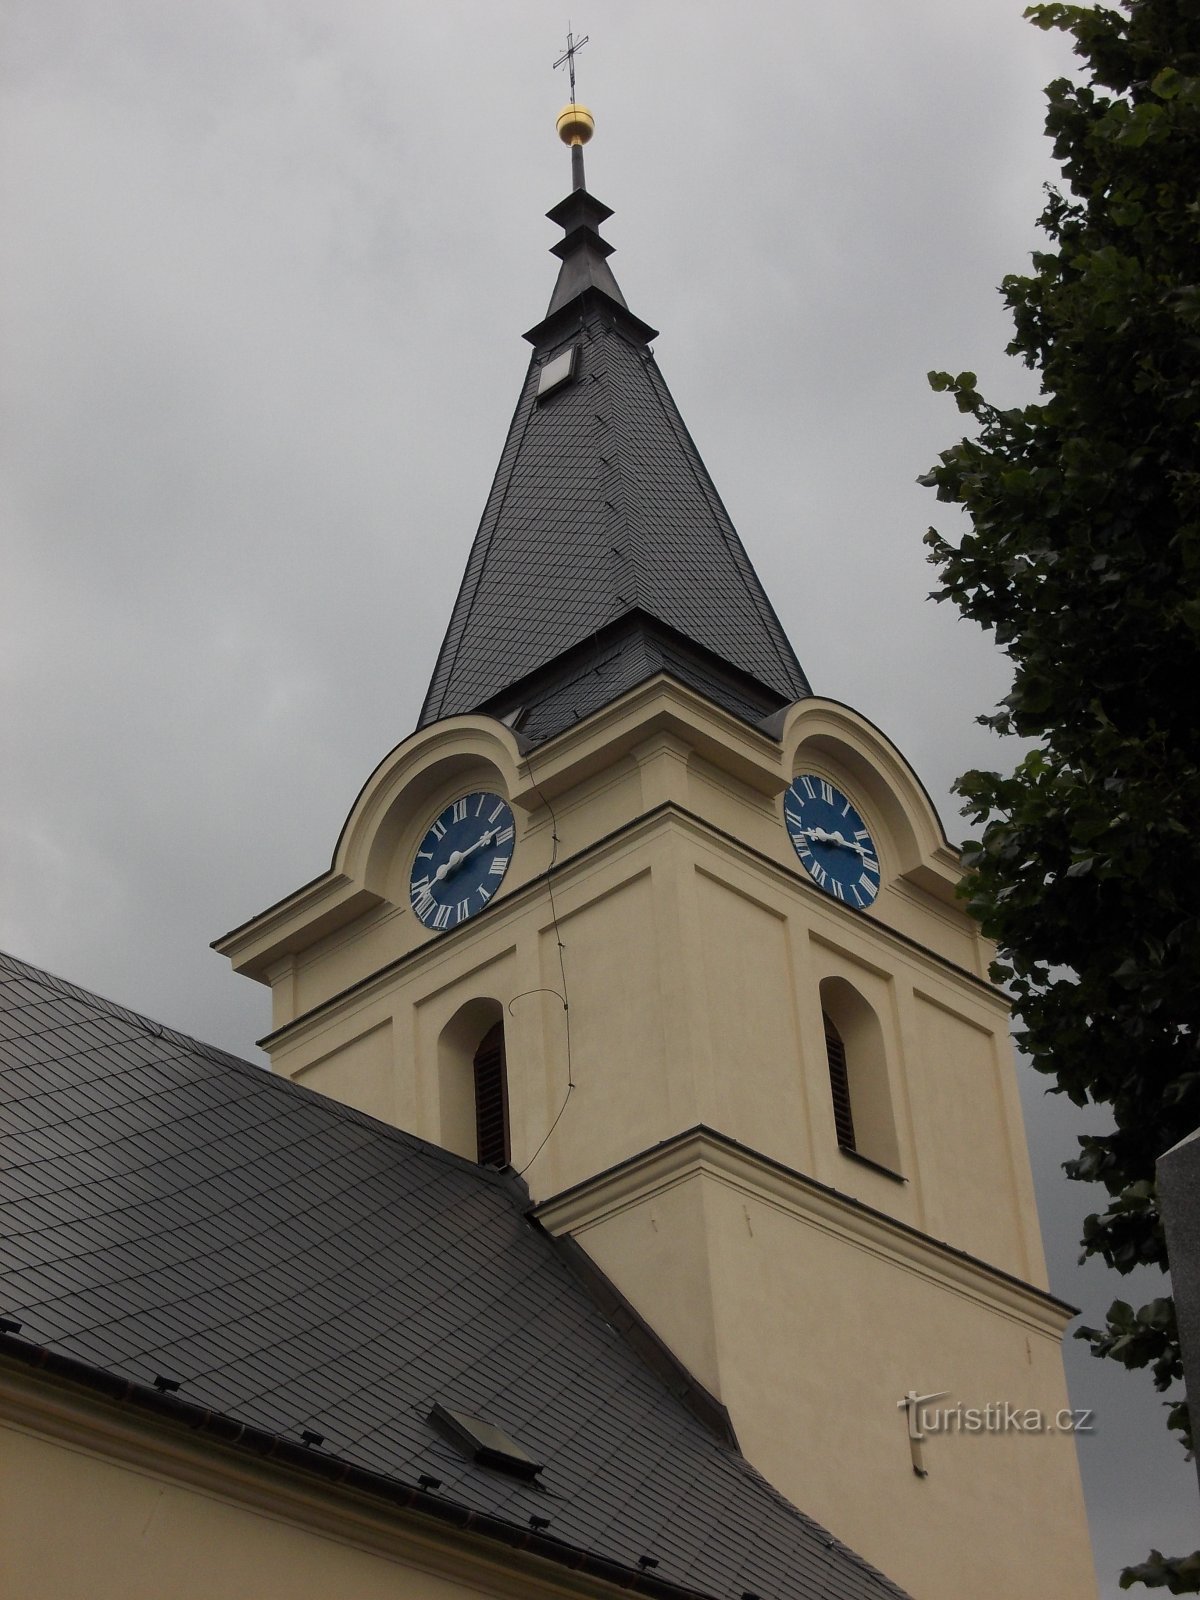 torre de igreja com relógio